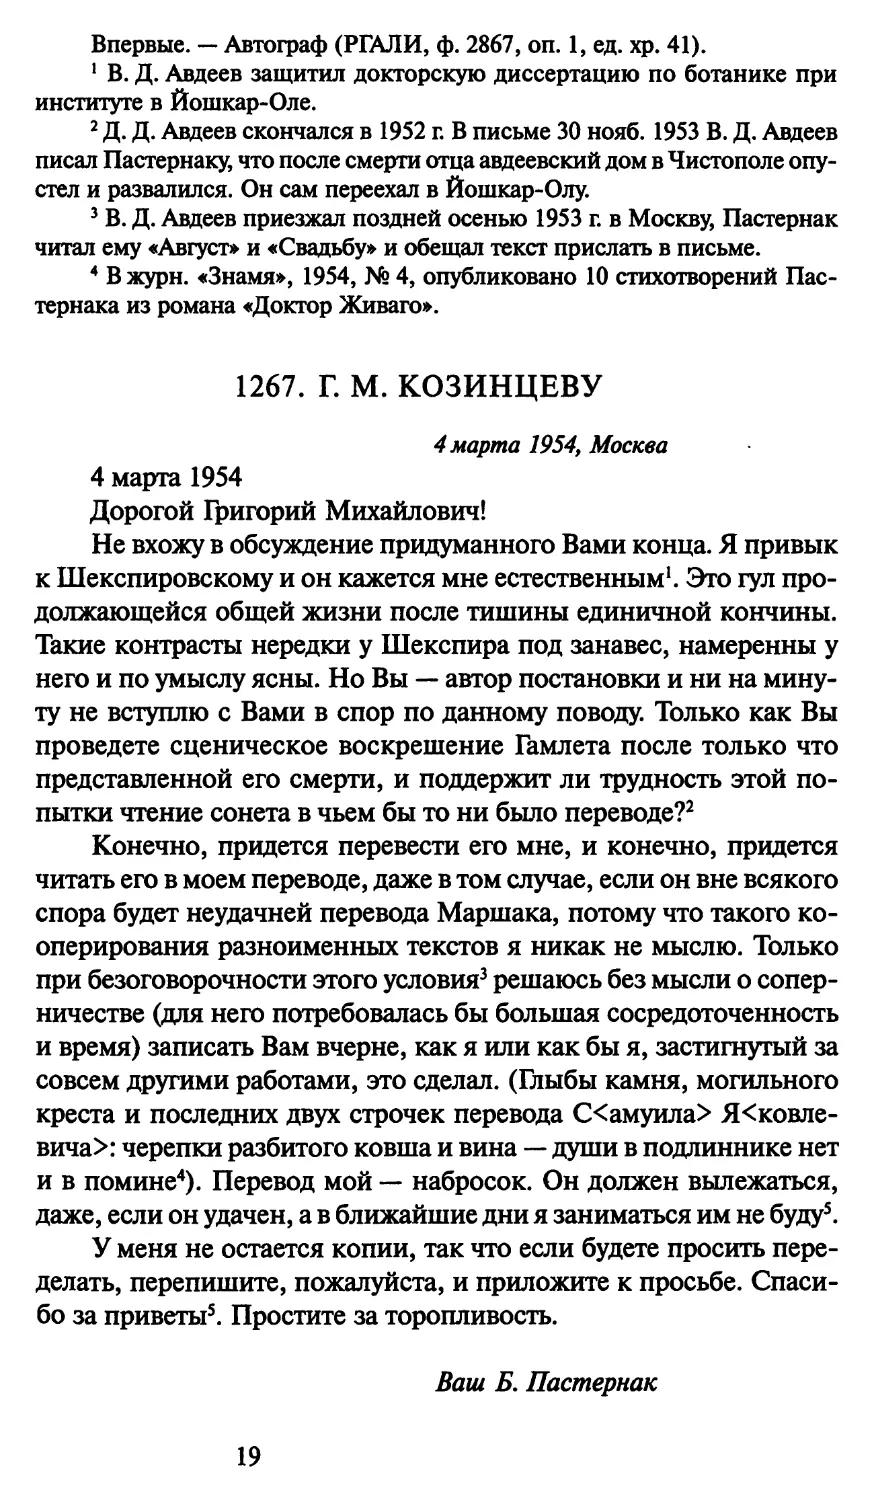 1267. Г. М. Козинцеву 4 марта 1954